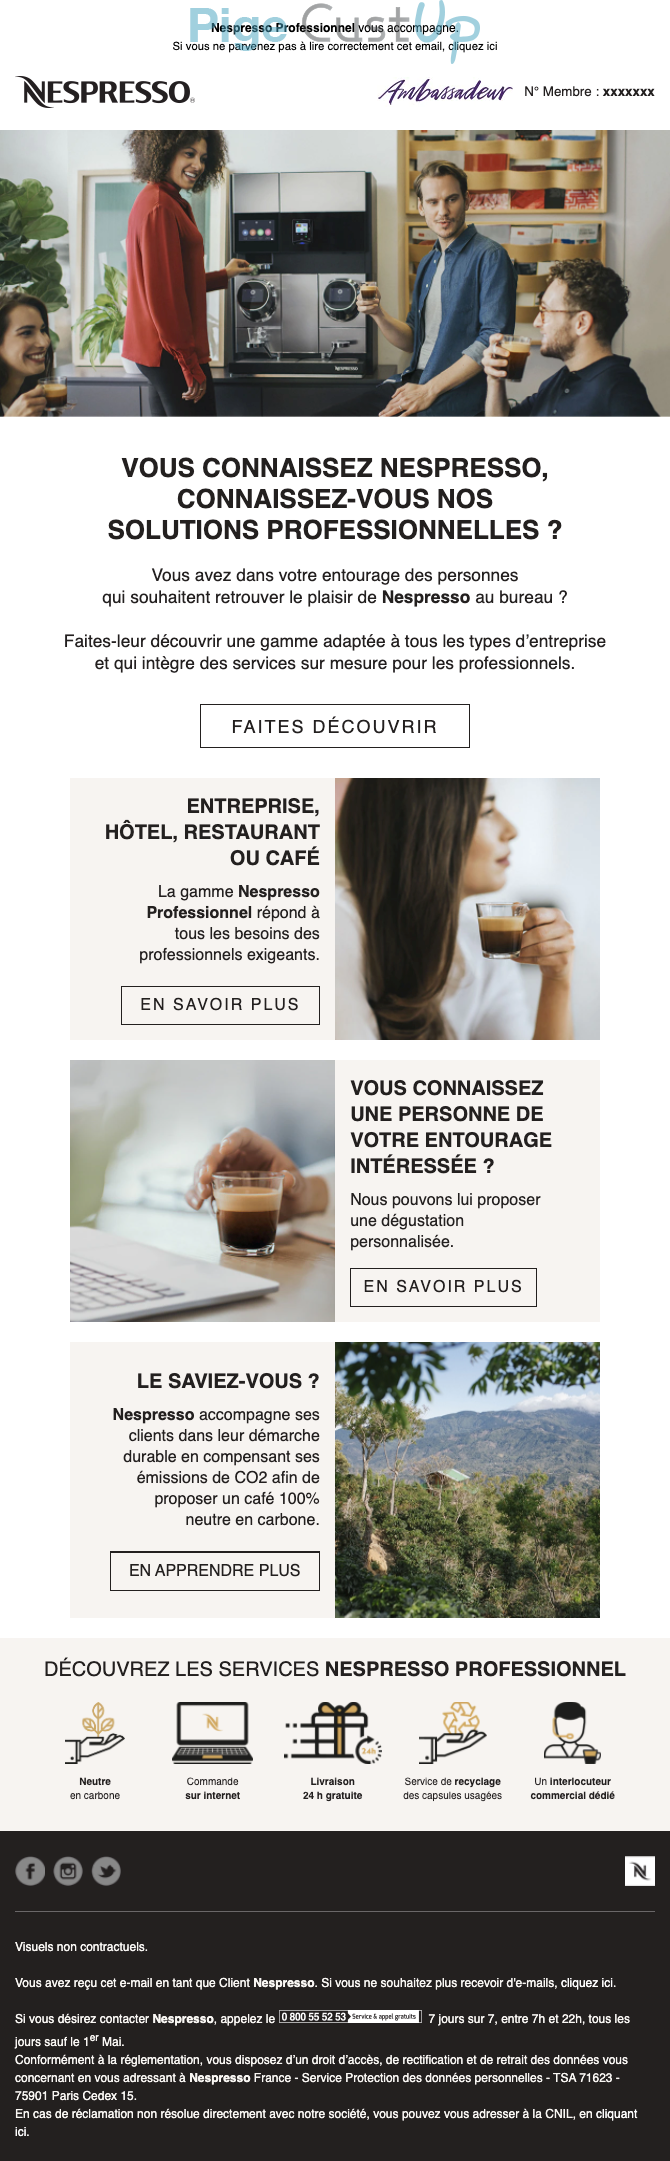 Exemple de Type de media  e-mailing - Nespresso - Marketing Acquisition - Parrainage